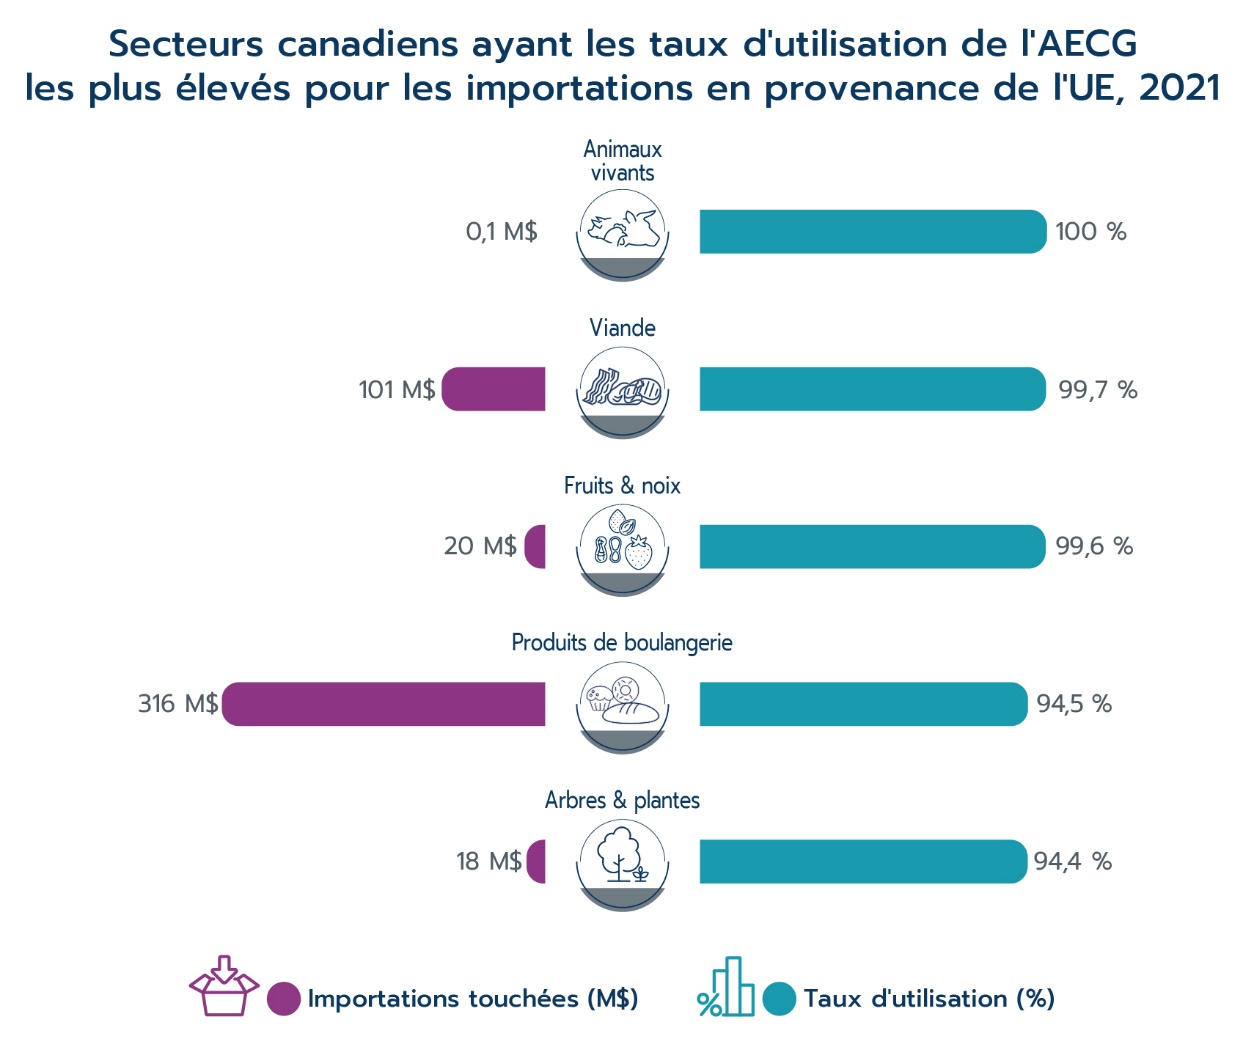 Secteurs canadiens ayant les taux d'utilisation de l'AECG les plus élevés pour les importations en provenance de l'UE, 2021